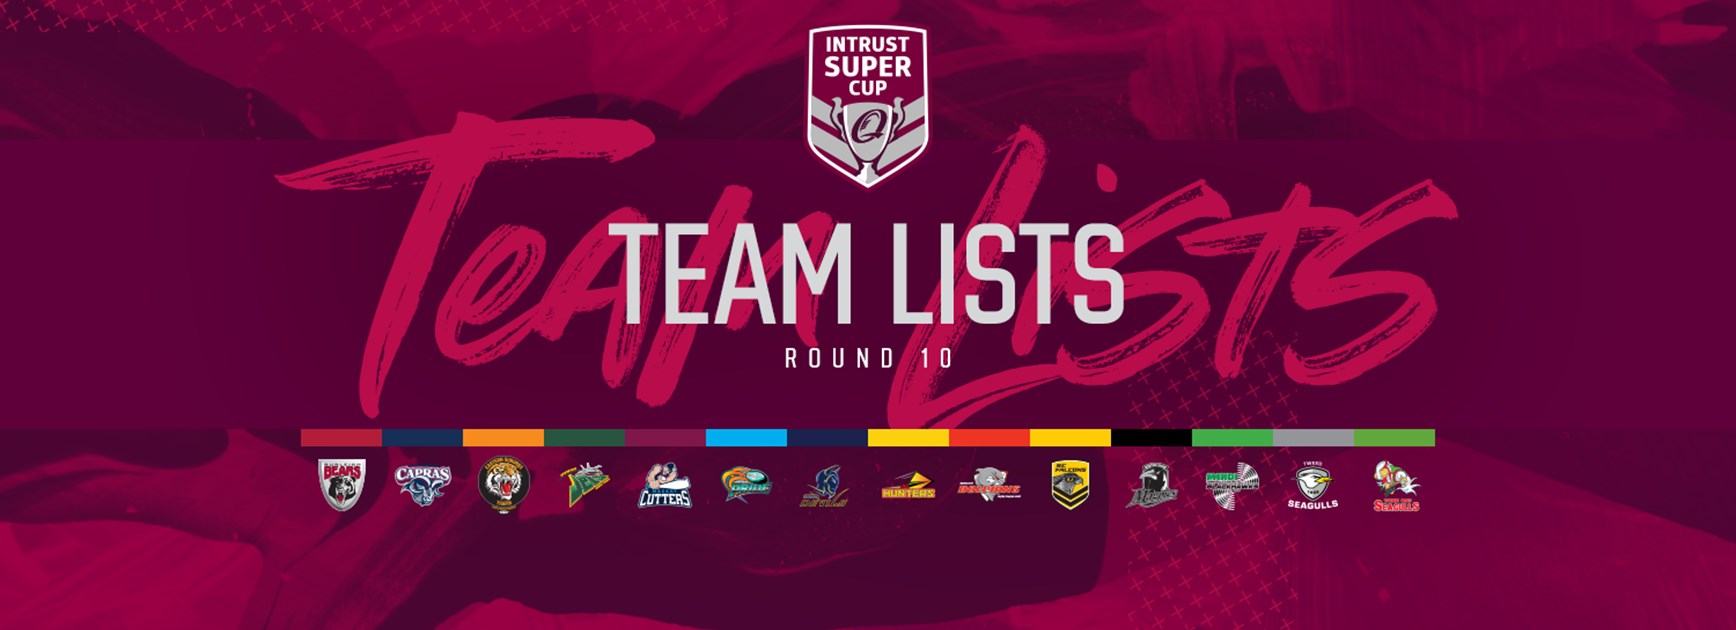 Intrust Super Cup Round 10 teams